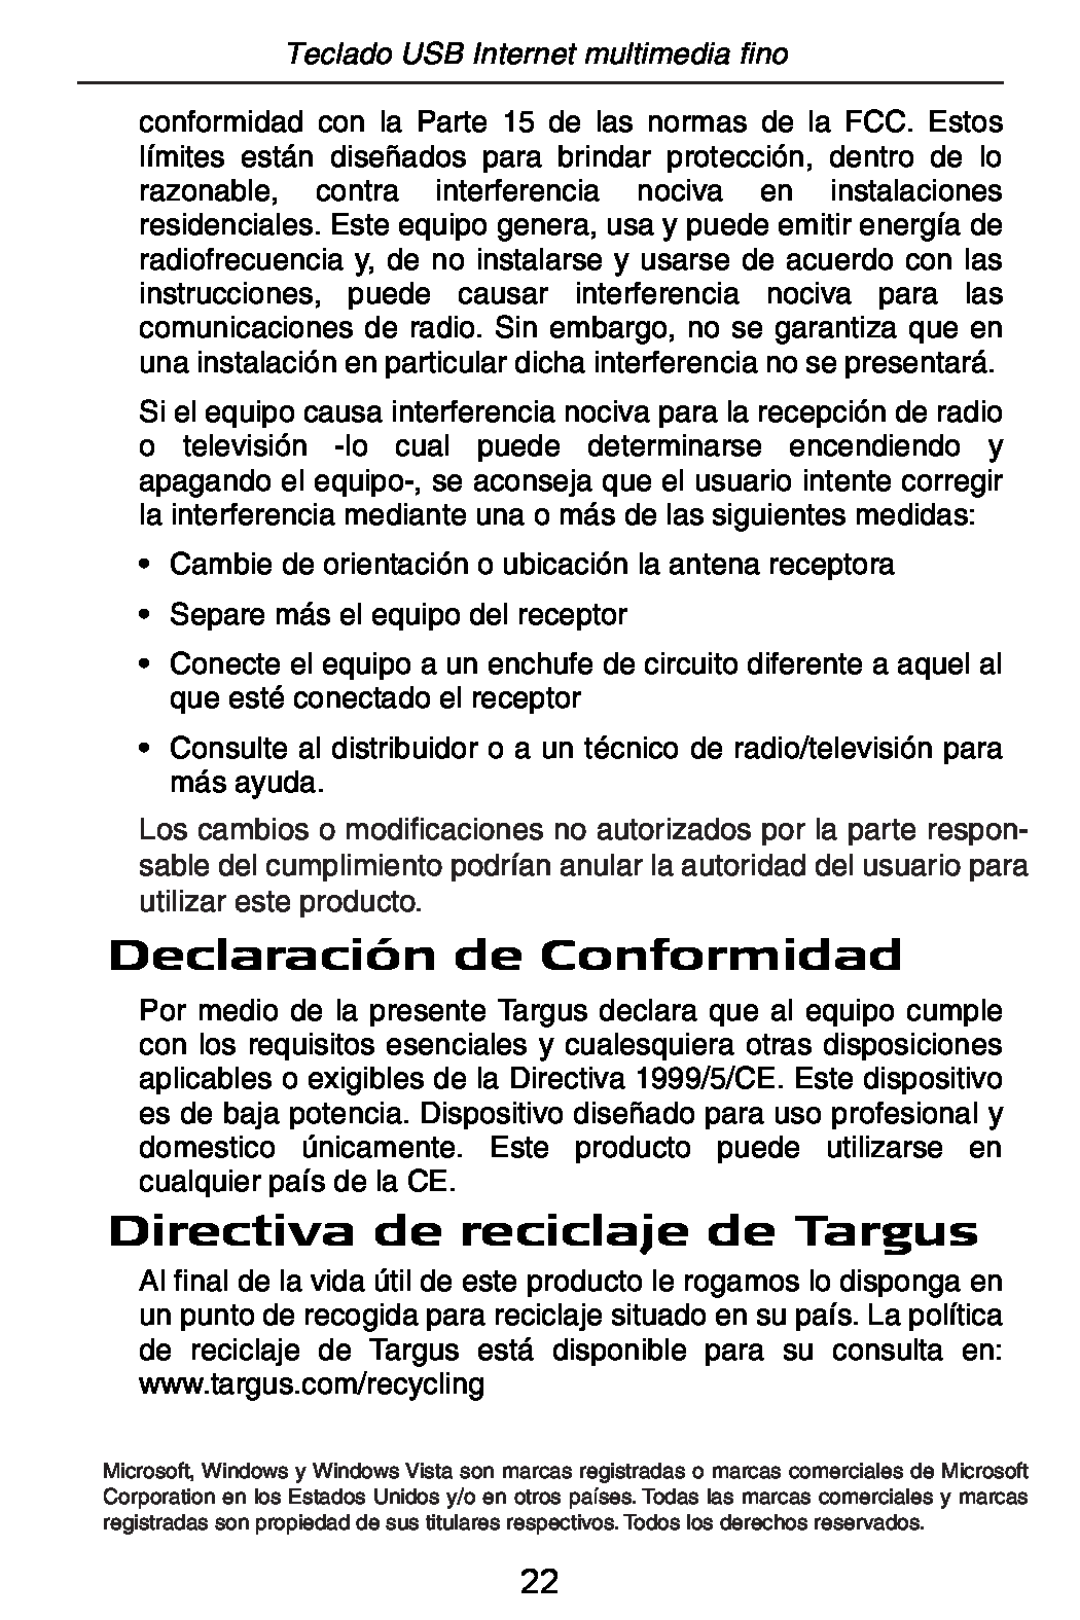 Targus slim internet multimedia USB keyboard specifications Declaración de Conformidad, Directiva de reciclaje de Targus 